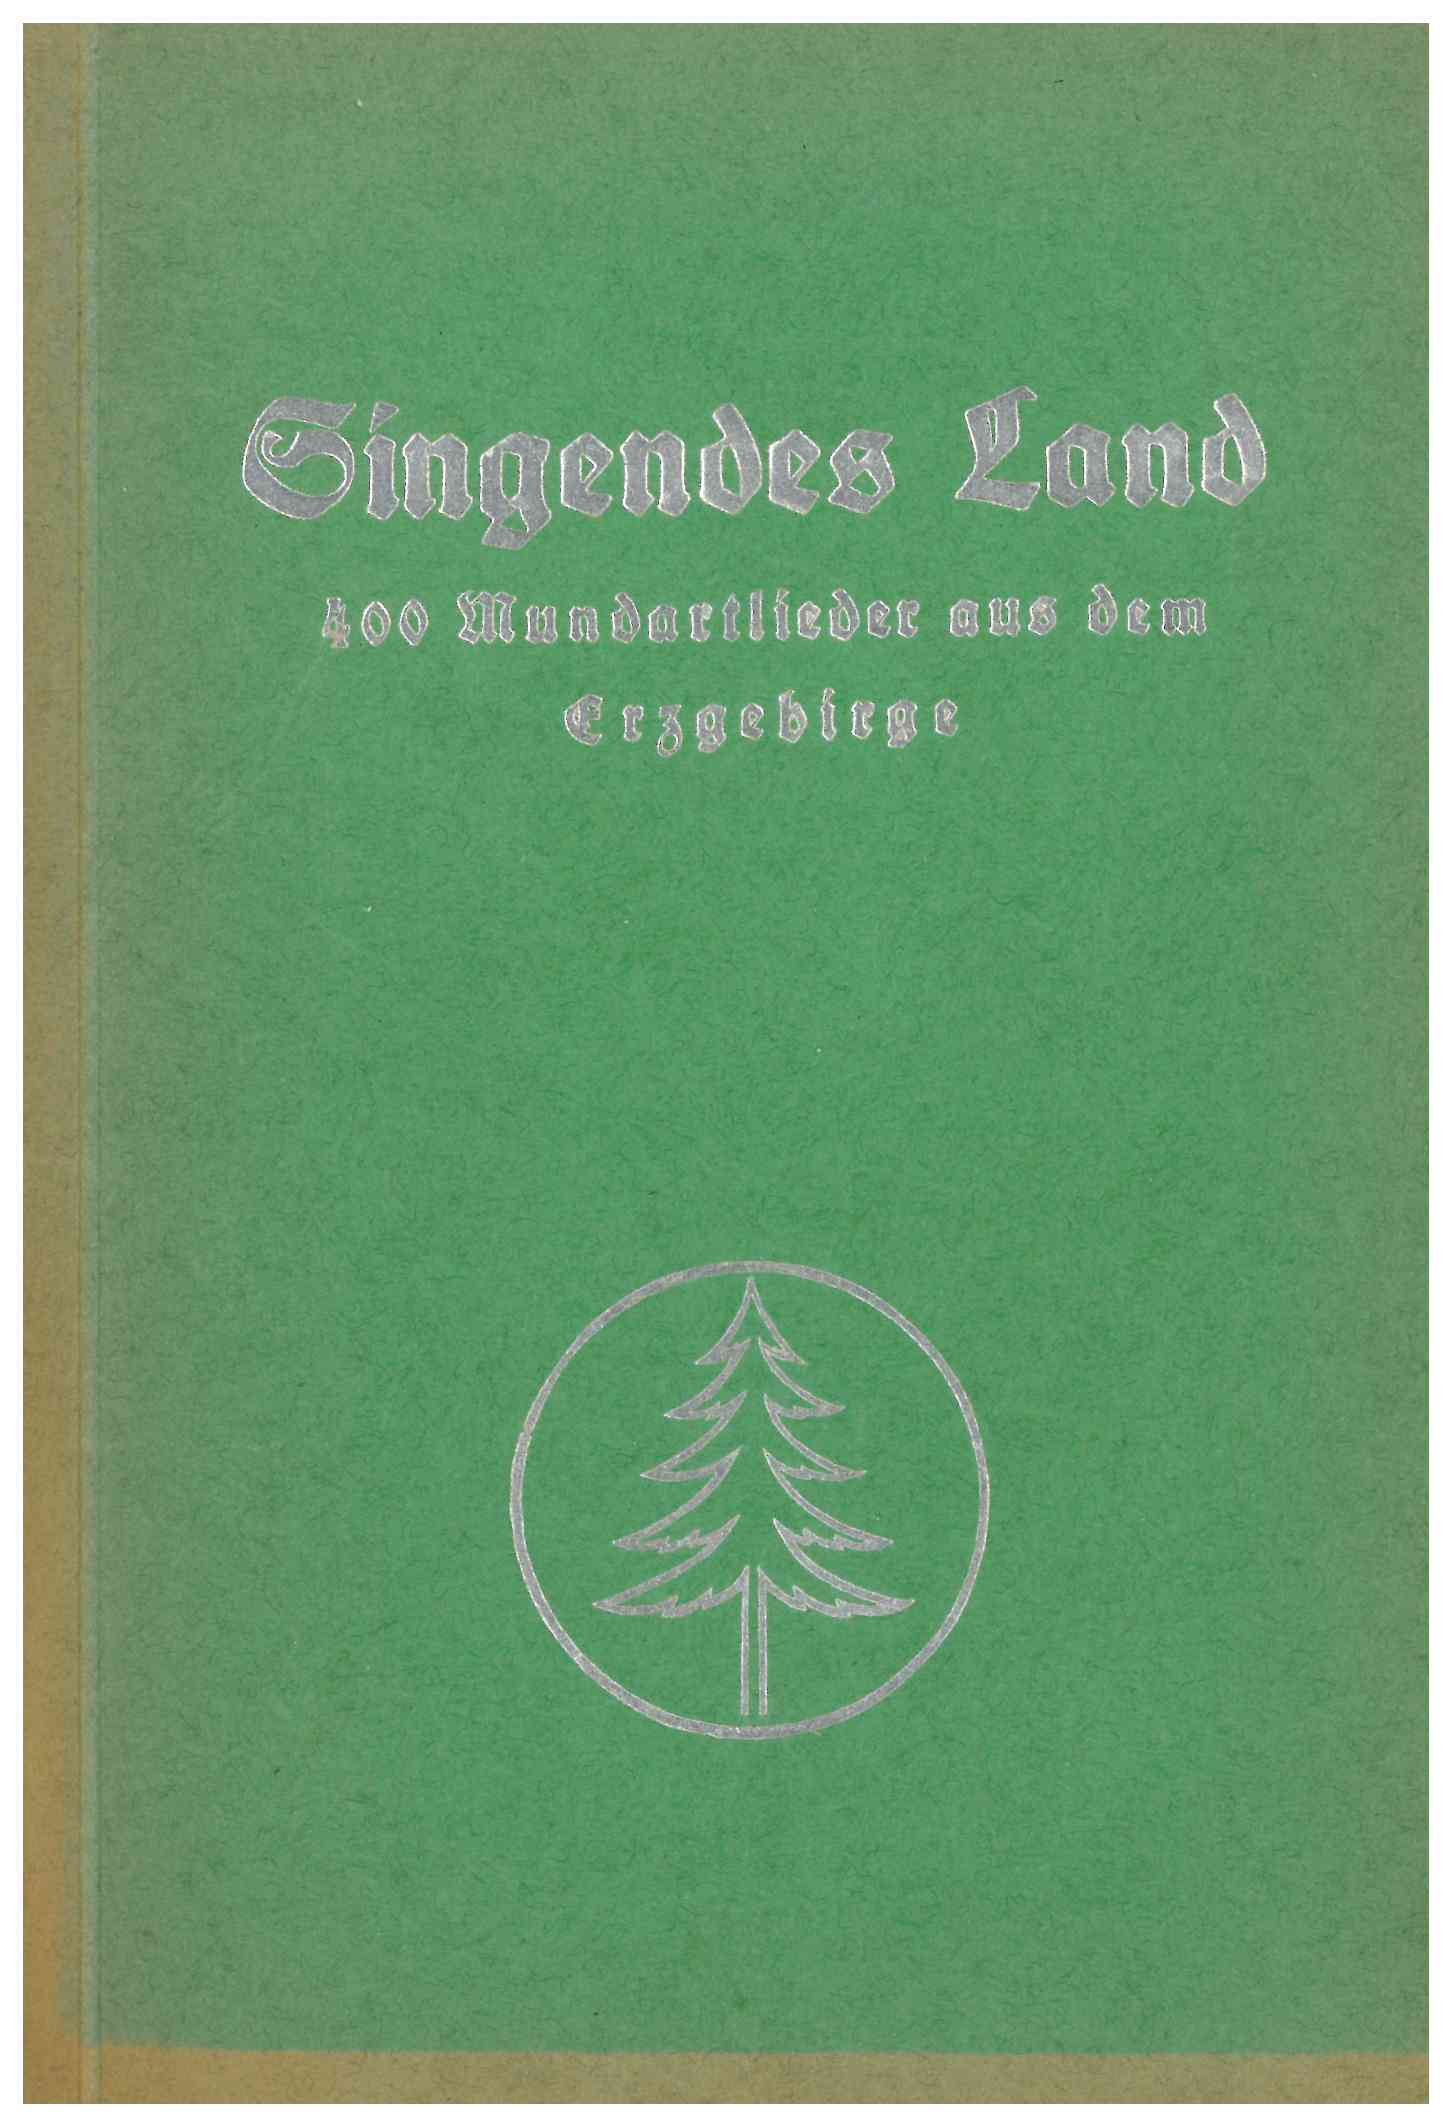 Originaltitel: Singendes Land ; Untertitel: 400 Mundartlieder aus dem Erzgebirge (Saxonia-Freiberg-Stiftung CC BY-NC-SA)